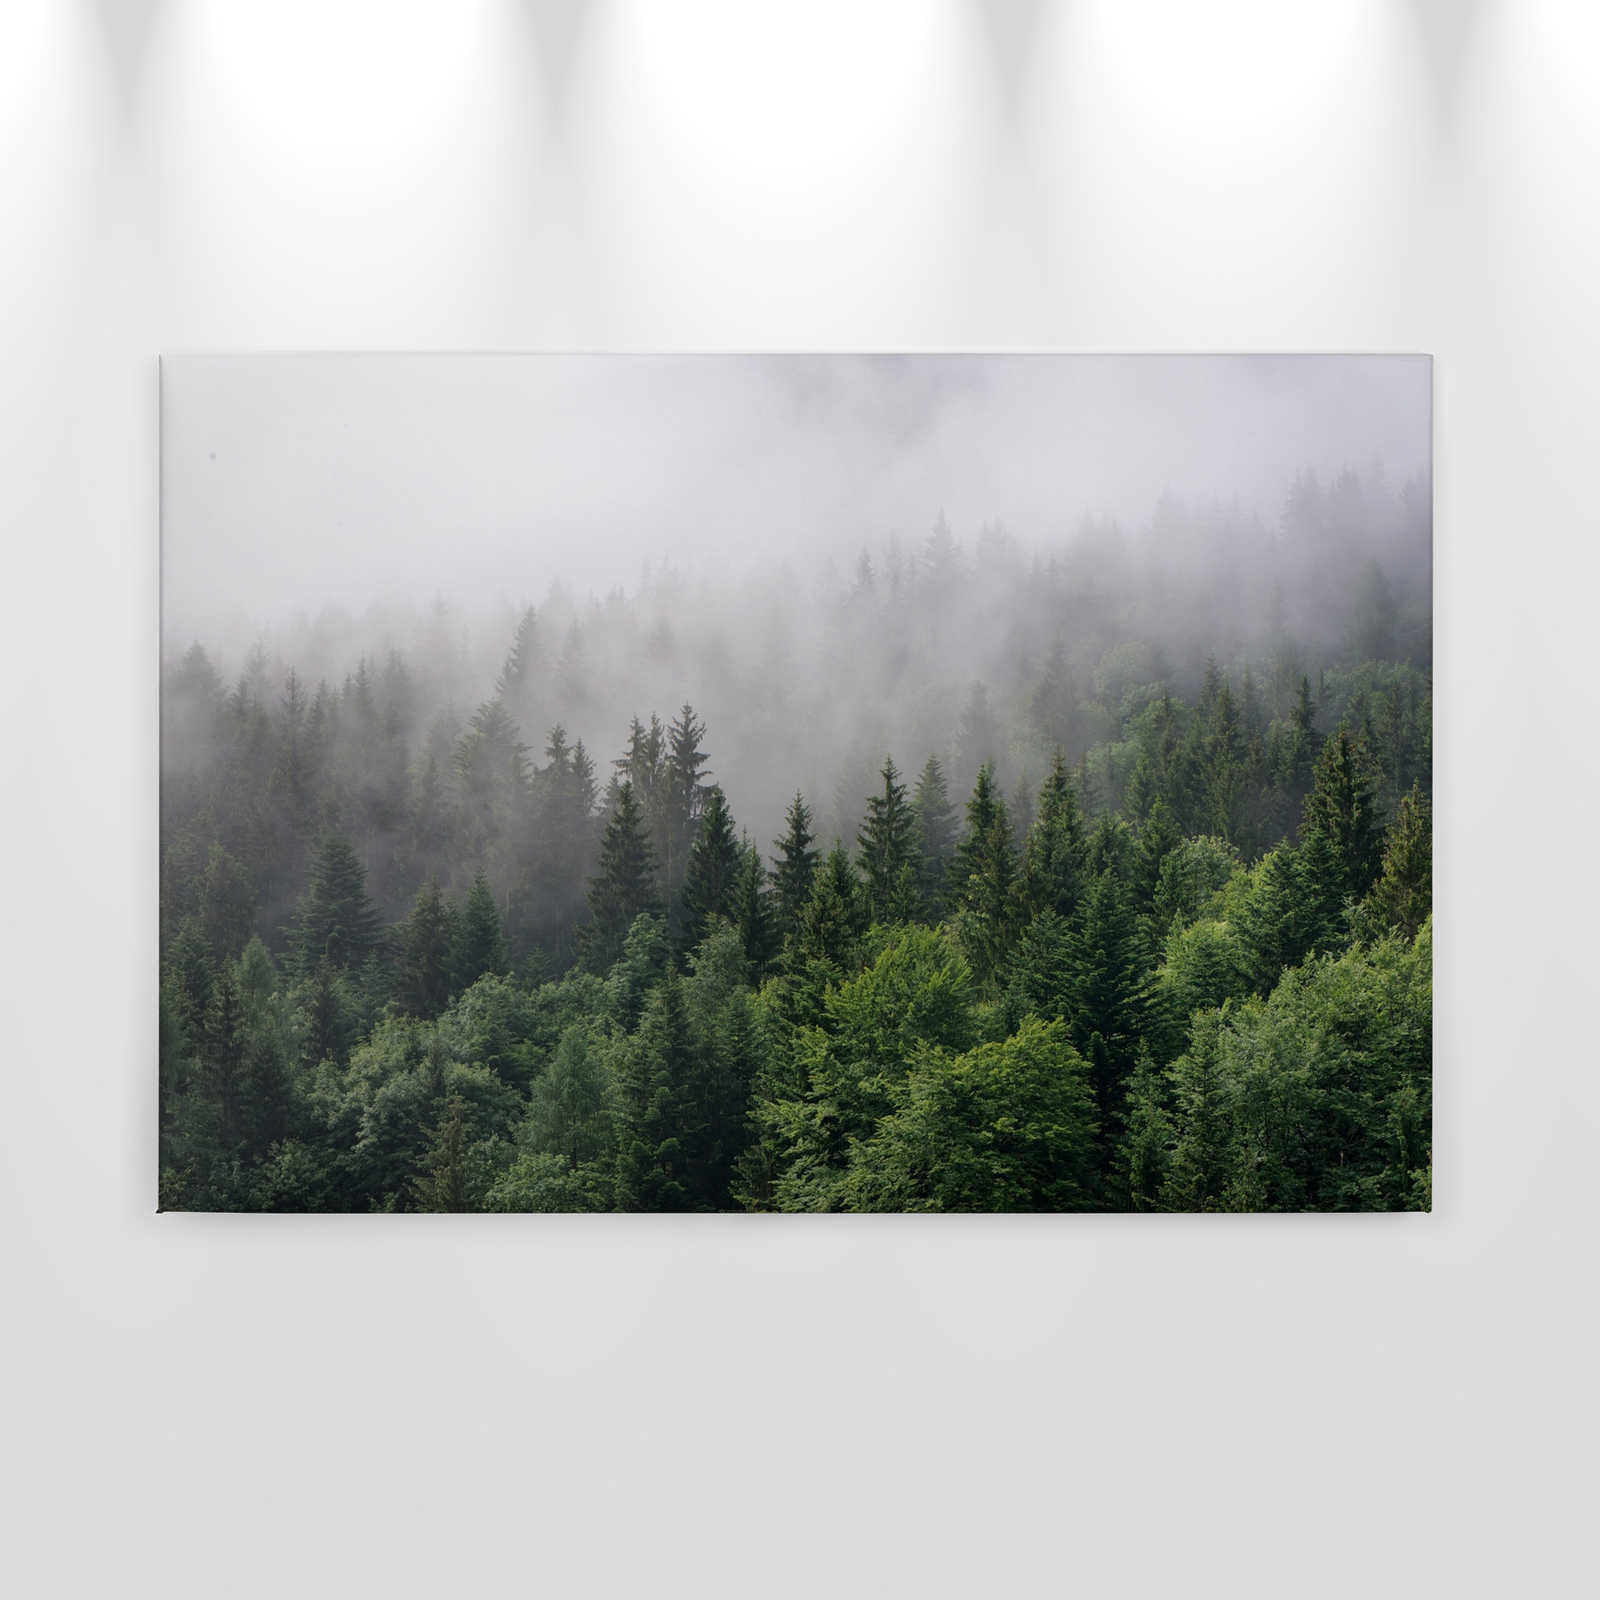             Toile avec forêt vue d'en haut un jour de brouillard - 0,90 m x 0,60 m
        